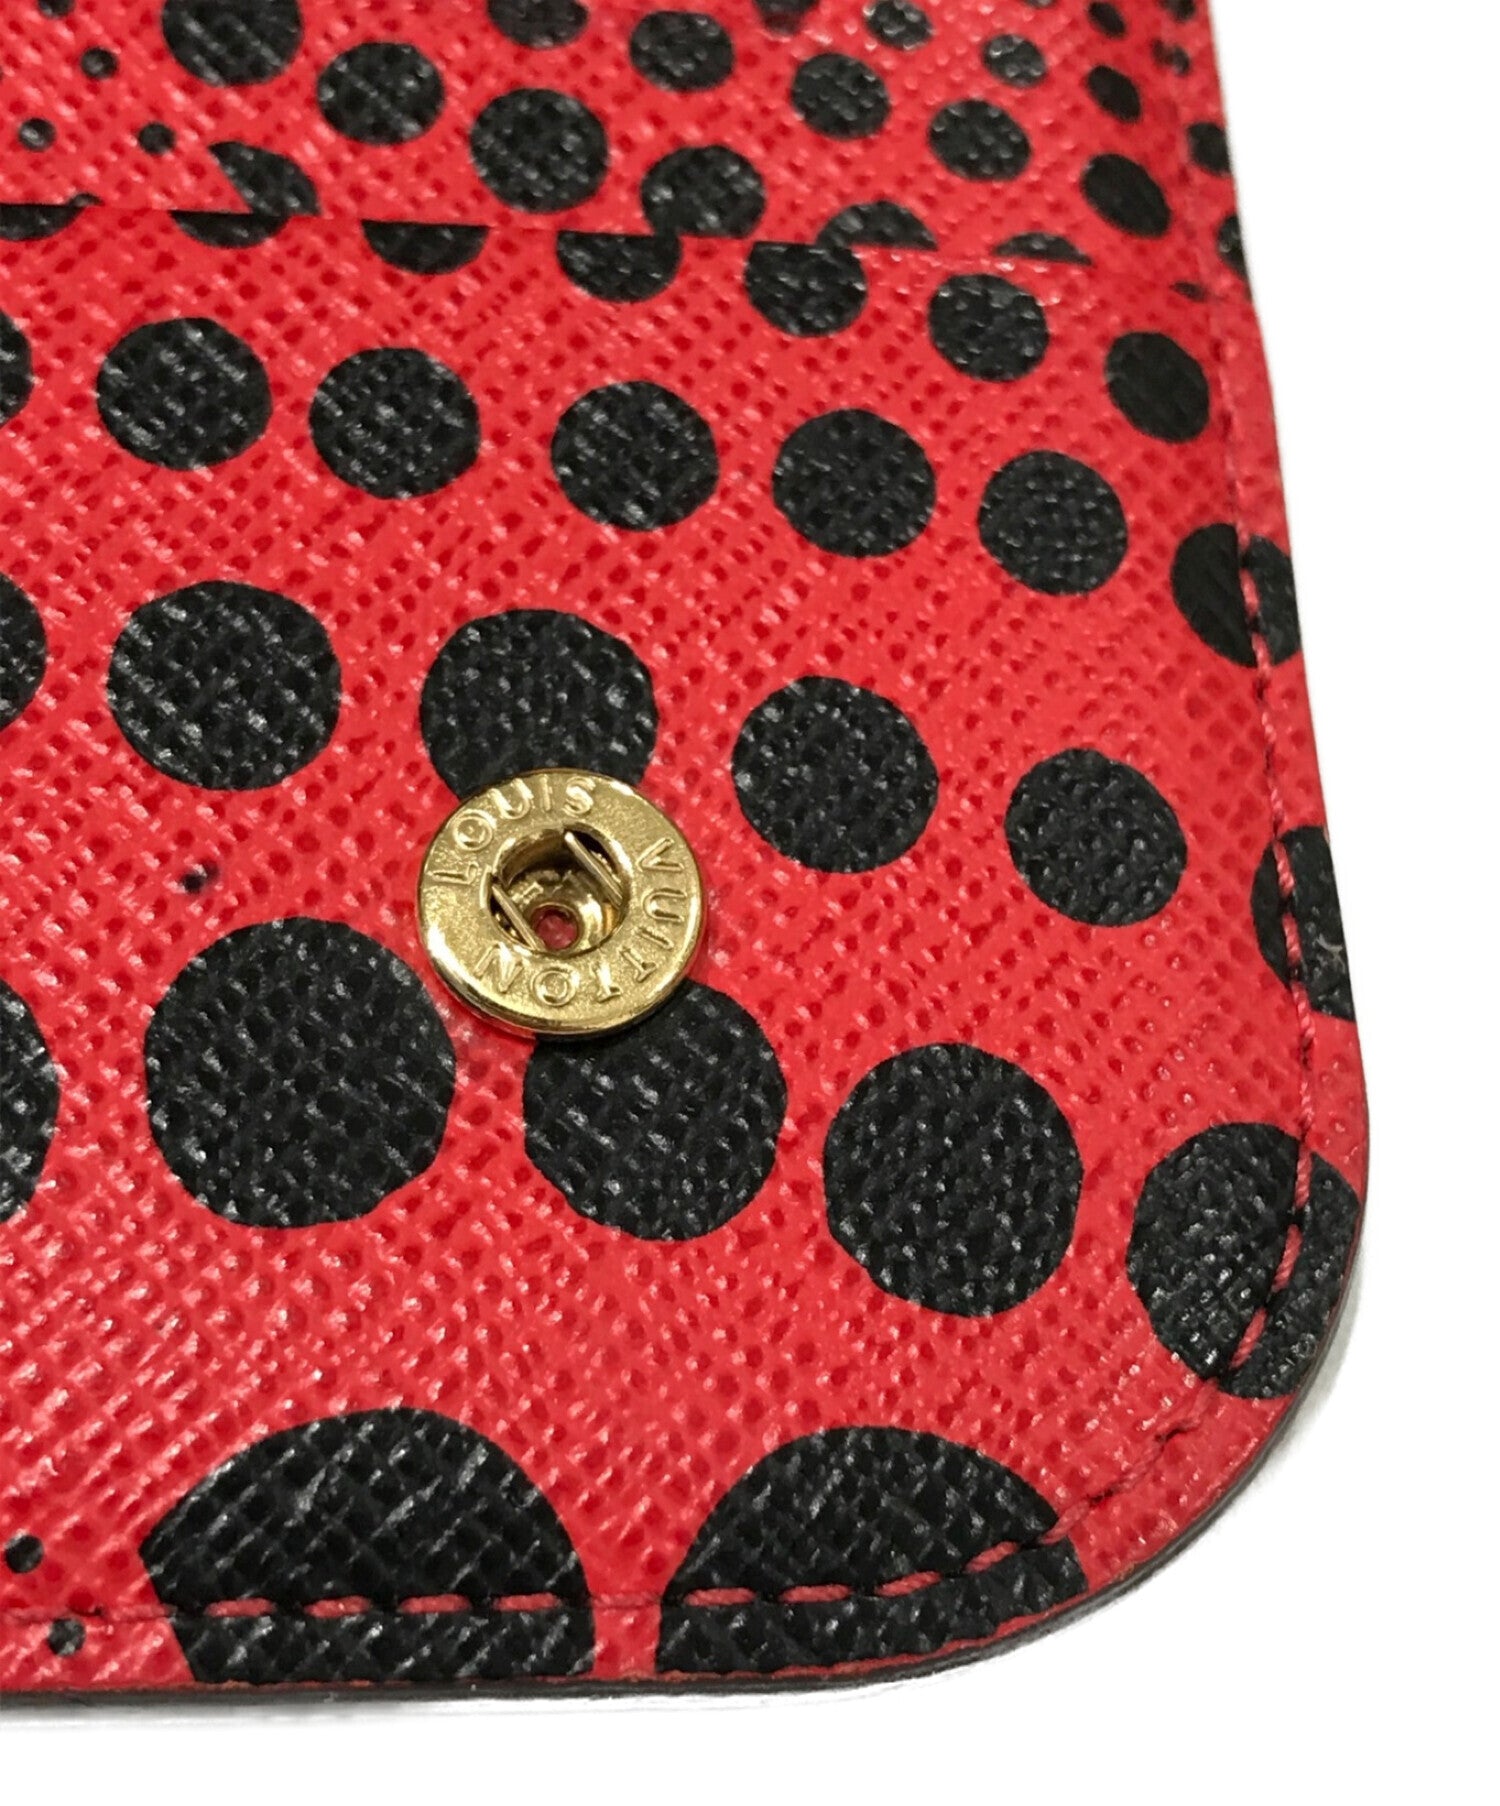 FWRD Renew Louis Vuitton Kusama Long Wallet in White & Red Dot